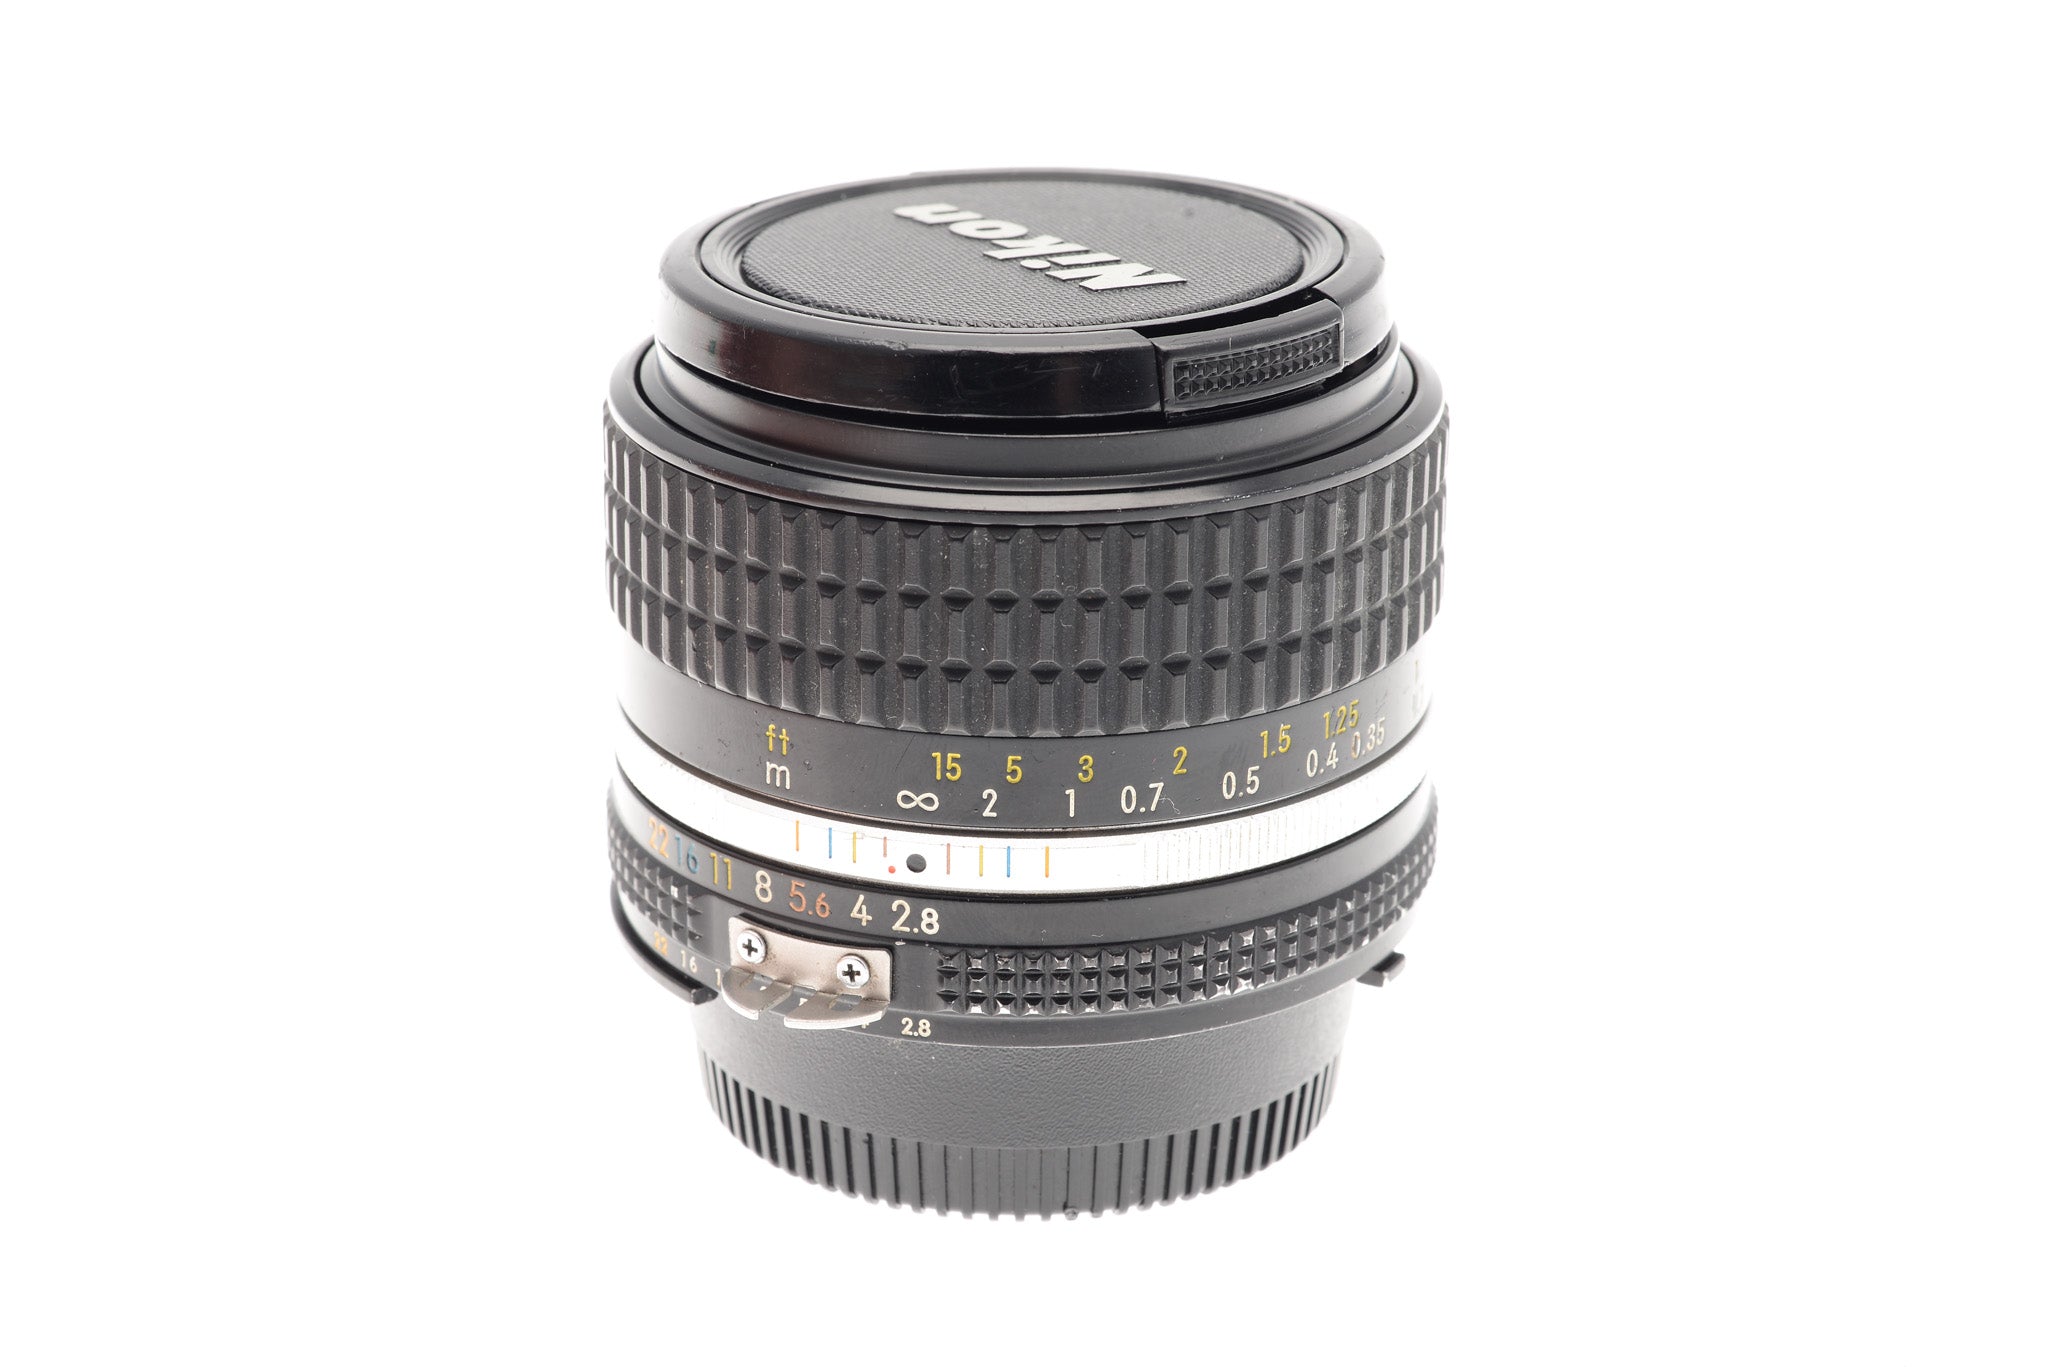 ☆安心の定価販売☆】 Ai-s Nikon レンズ(単焦点) Nikkor f2.8 28mm ...